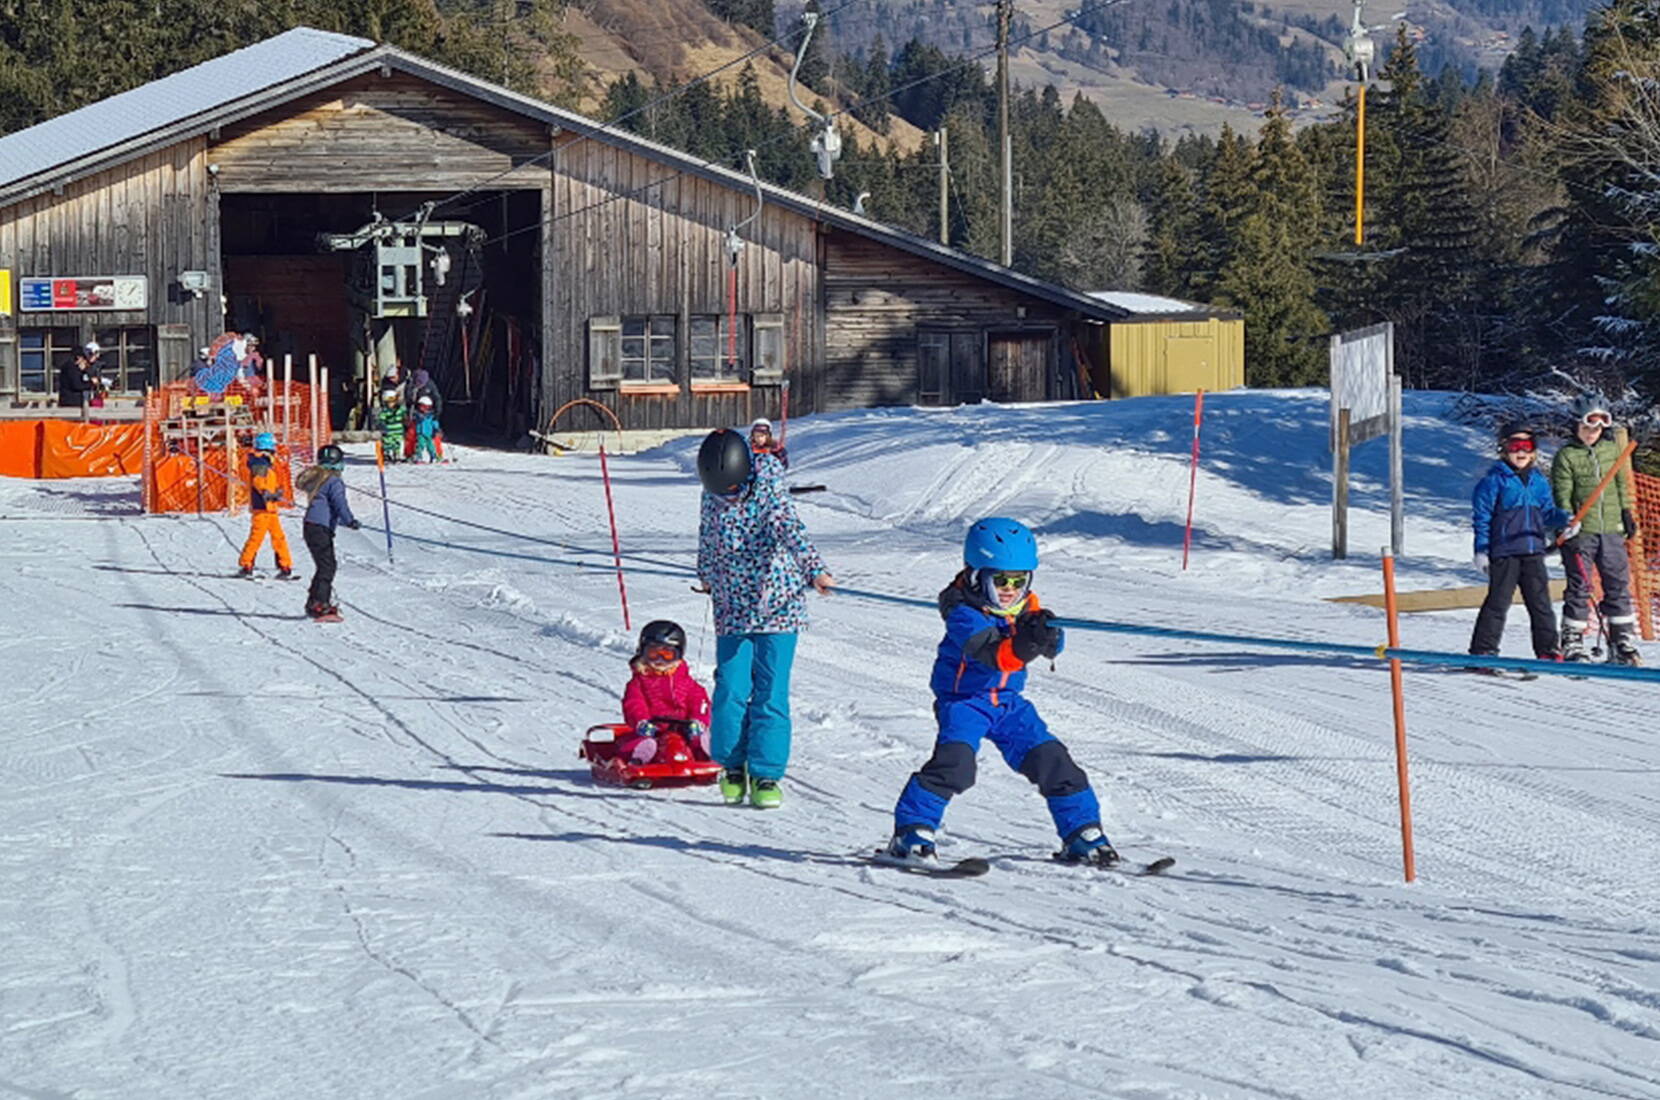 Excursion en famille au domaine skiable de Rossberg dans le Simmental. L'offre de ce domaine skiable et de loisirs est agréable, adaptée aux familles et bon marché ! La clarté du domaine skiable est particulièrement appréciée des familles.